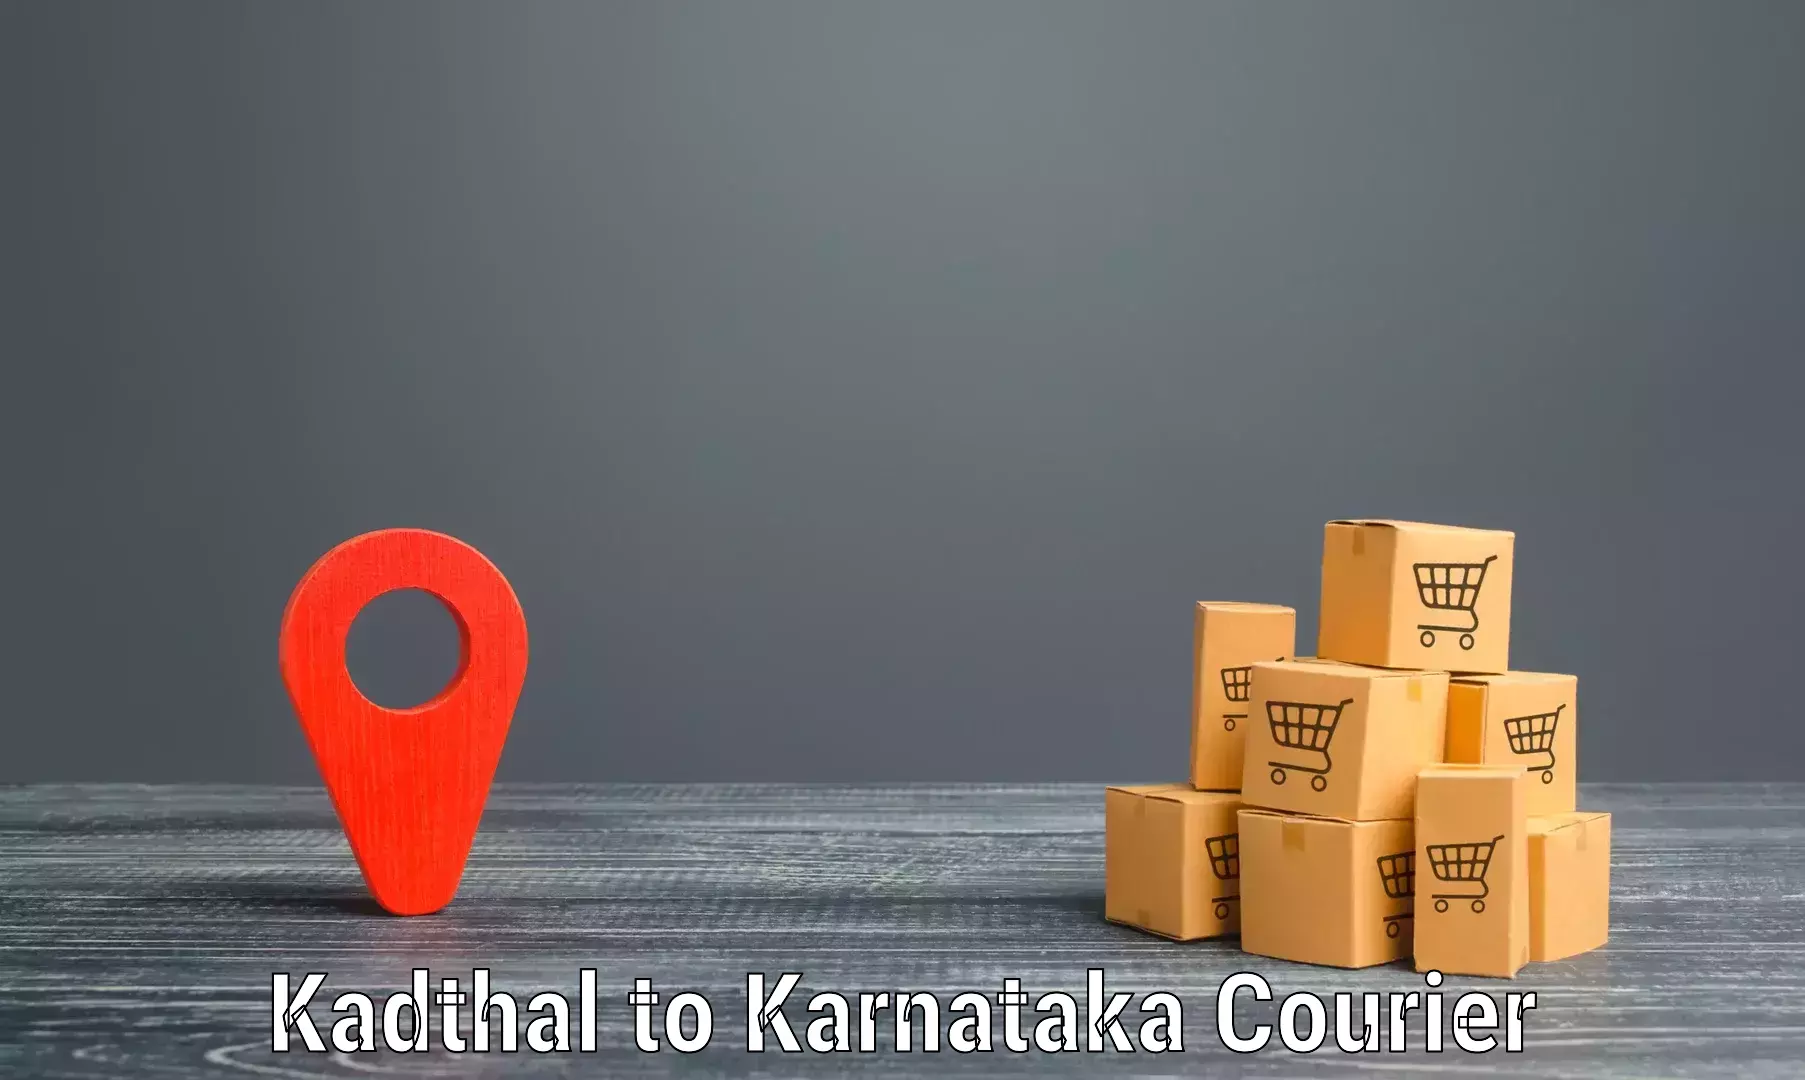 Speedy delivery service Kadthal to Udupi